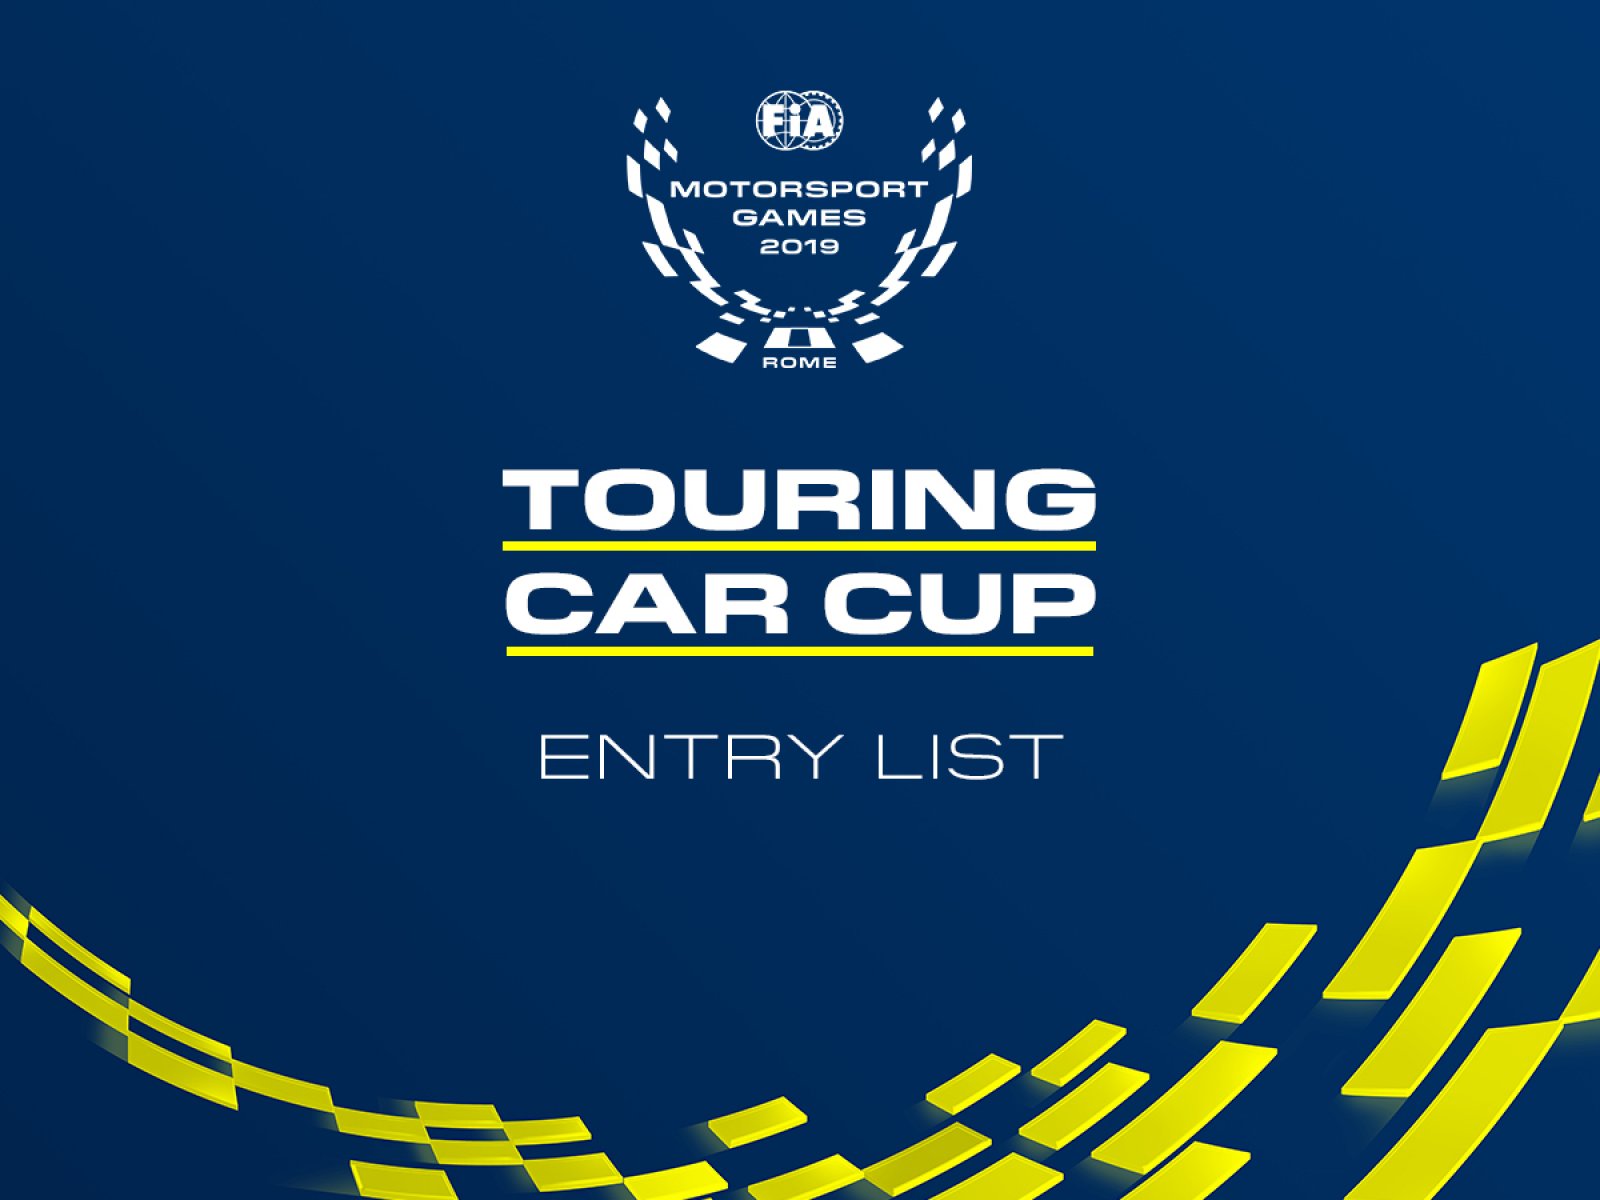 20 partecipanti confermati per la Touring Car Cup ai FIA Motorsport Games